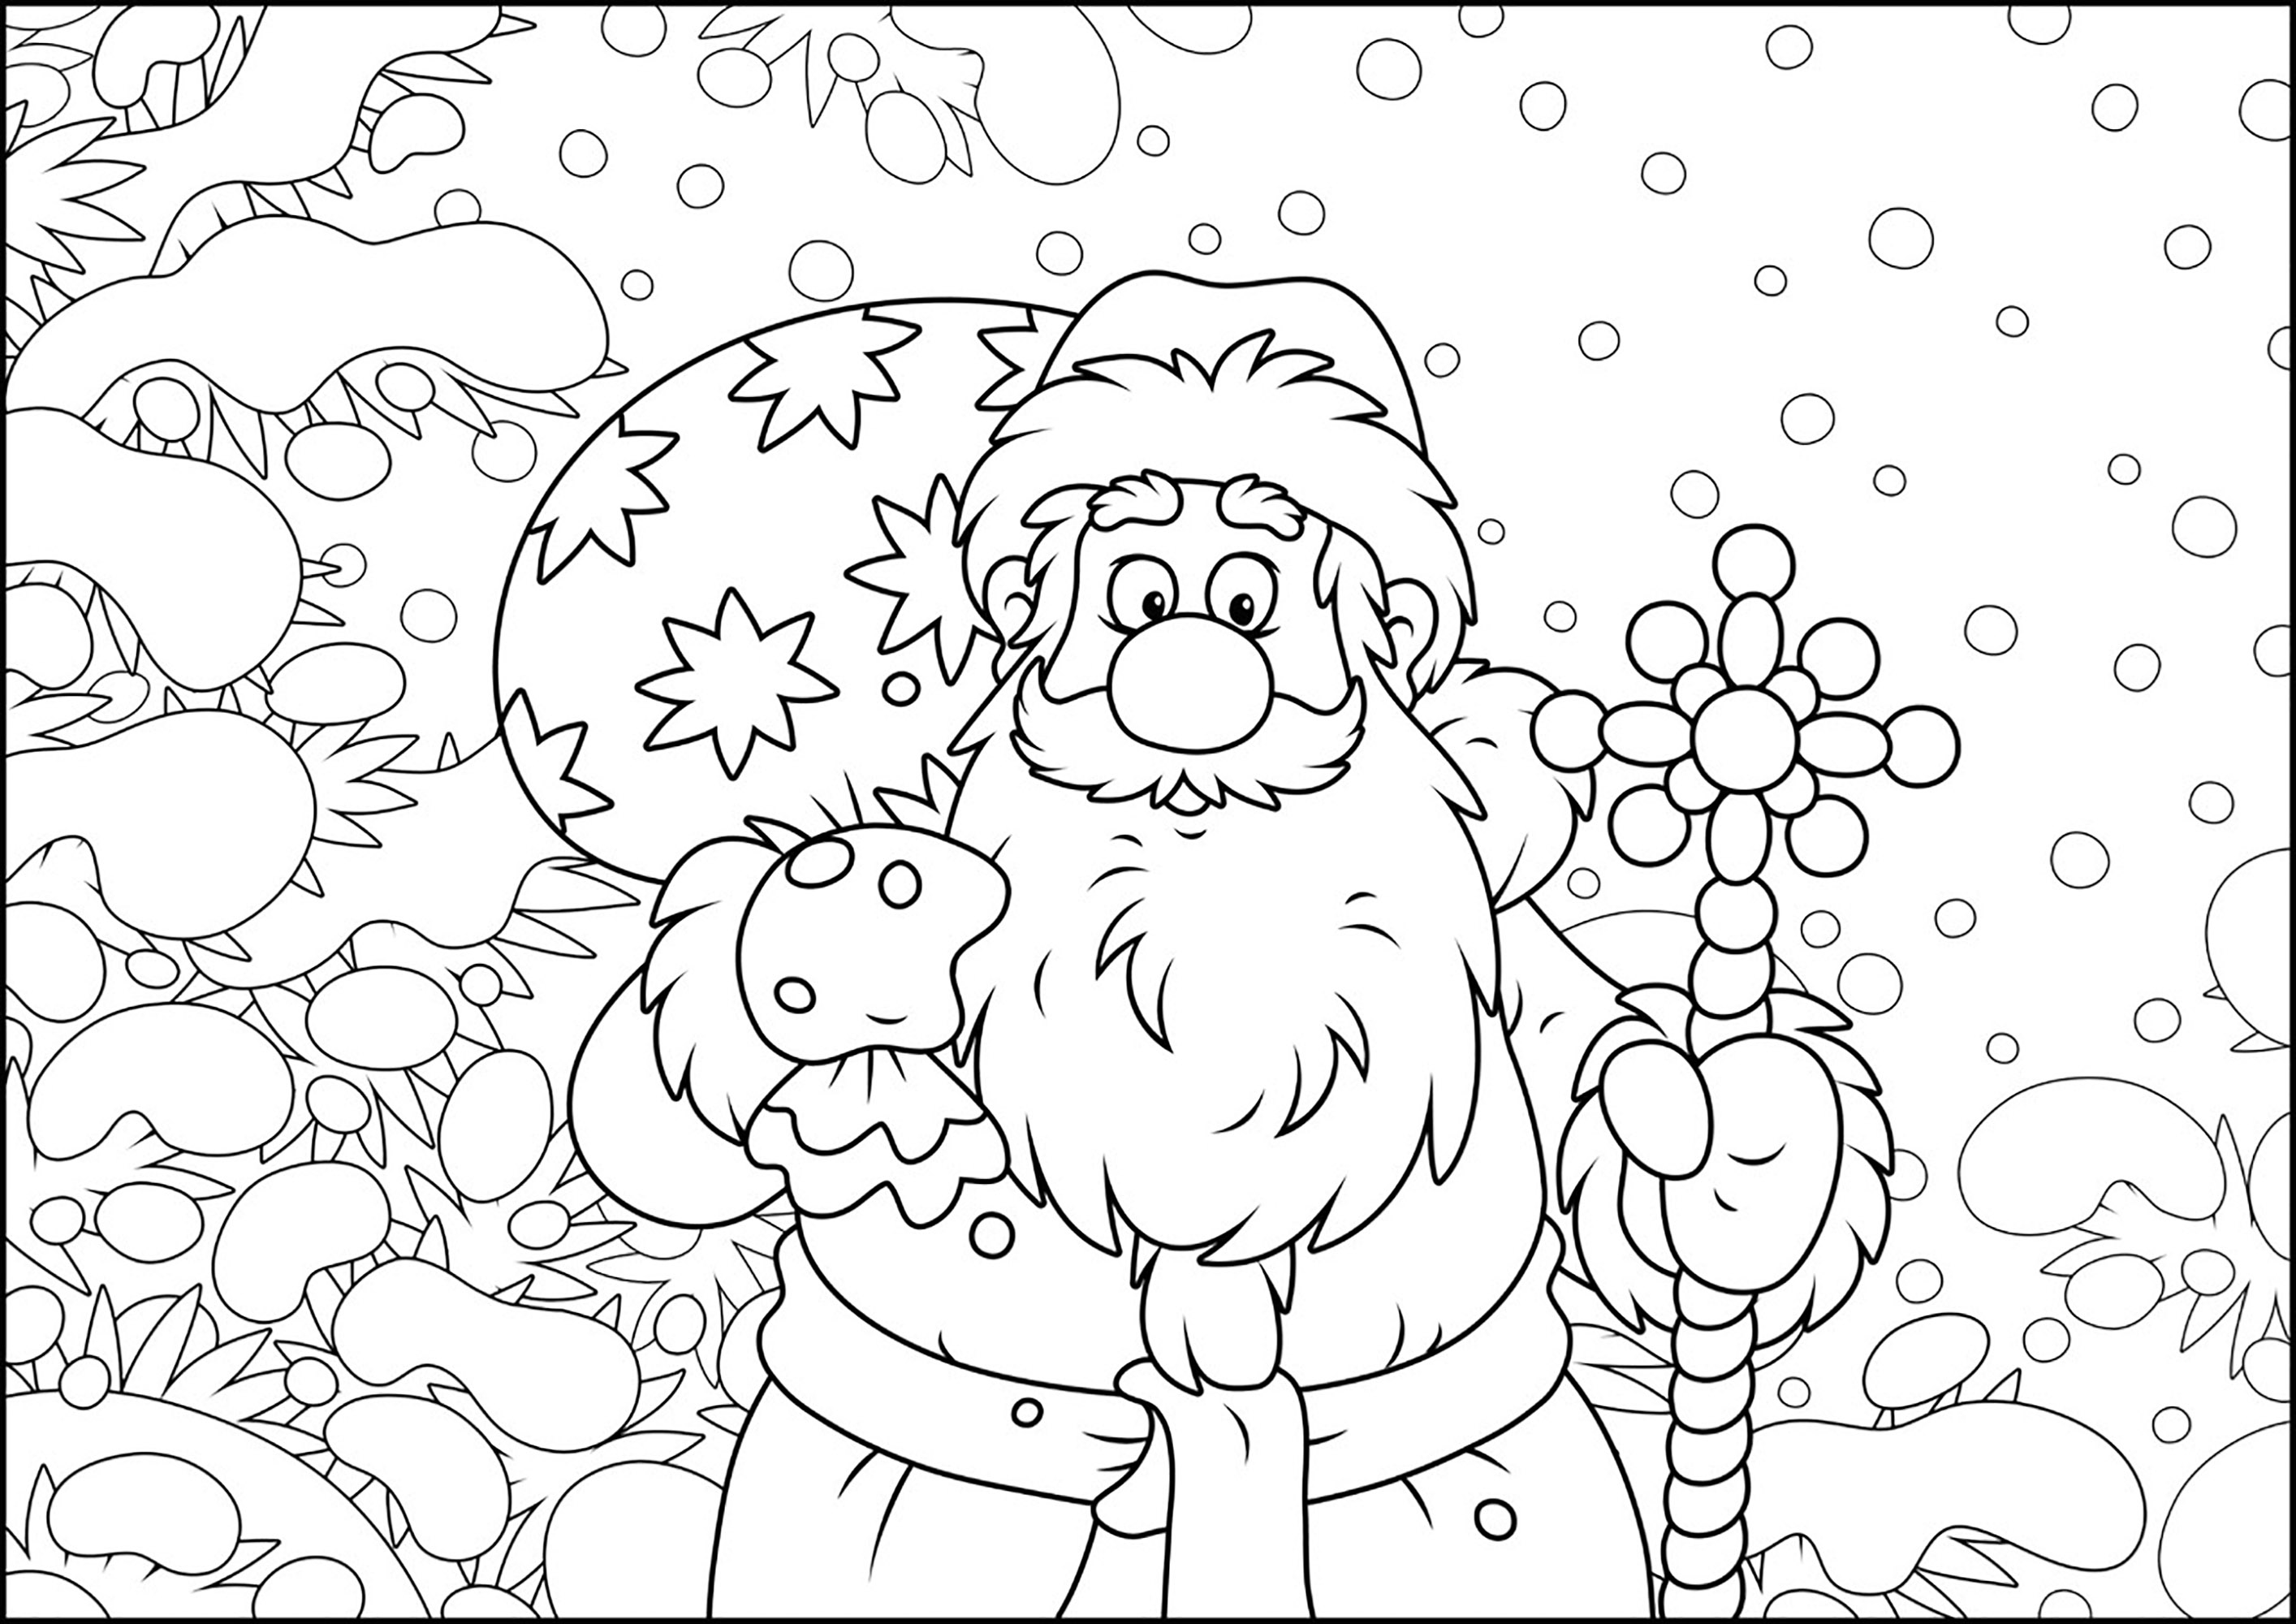 Papá Noel en dibujos animados. Colorea a este Papá Noel trayendo regalos a los niños buenos en un paisaje nevado, Origen : 123rf   Artista : Alex. Bannykh